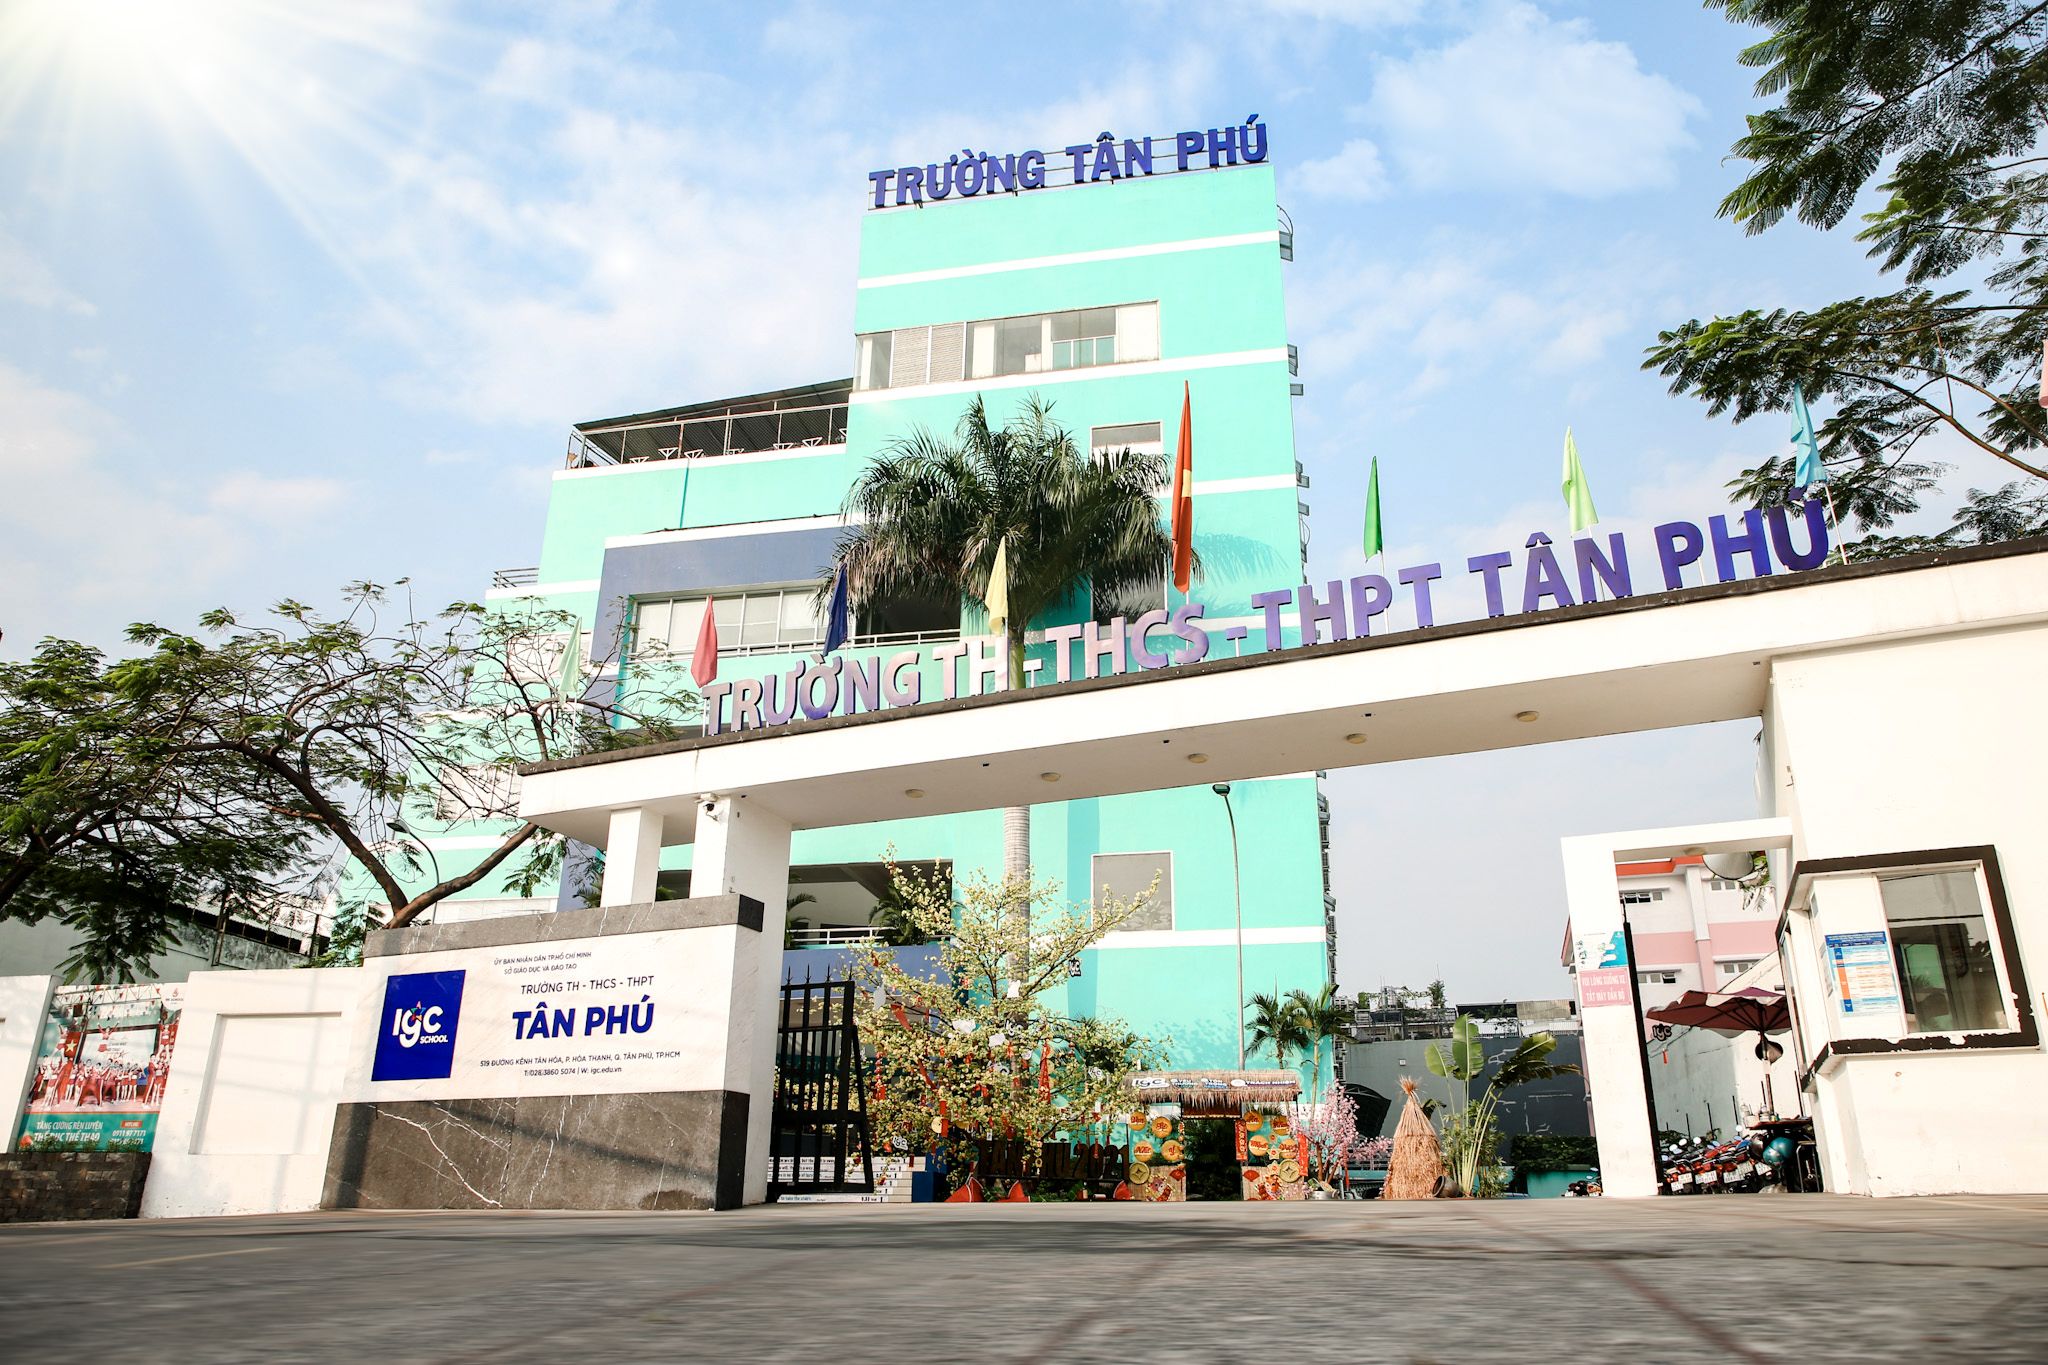 Điểm danh top 3 trường trung học phổ thông tốt nhất gần chung cư Sài Gòn Apartment, quận Tân Phú